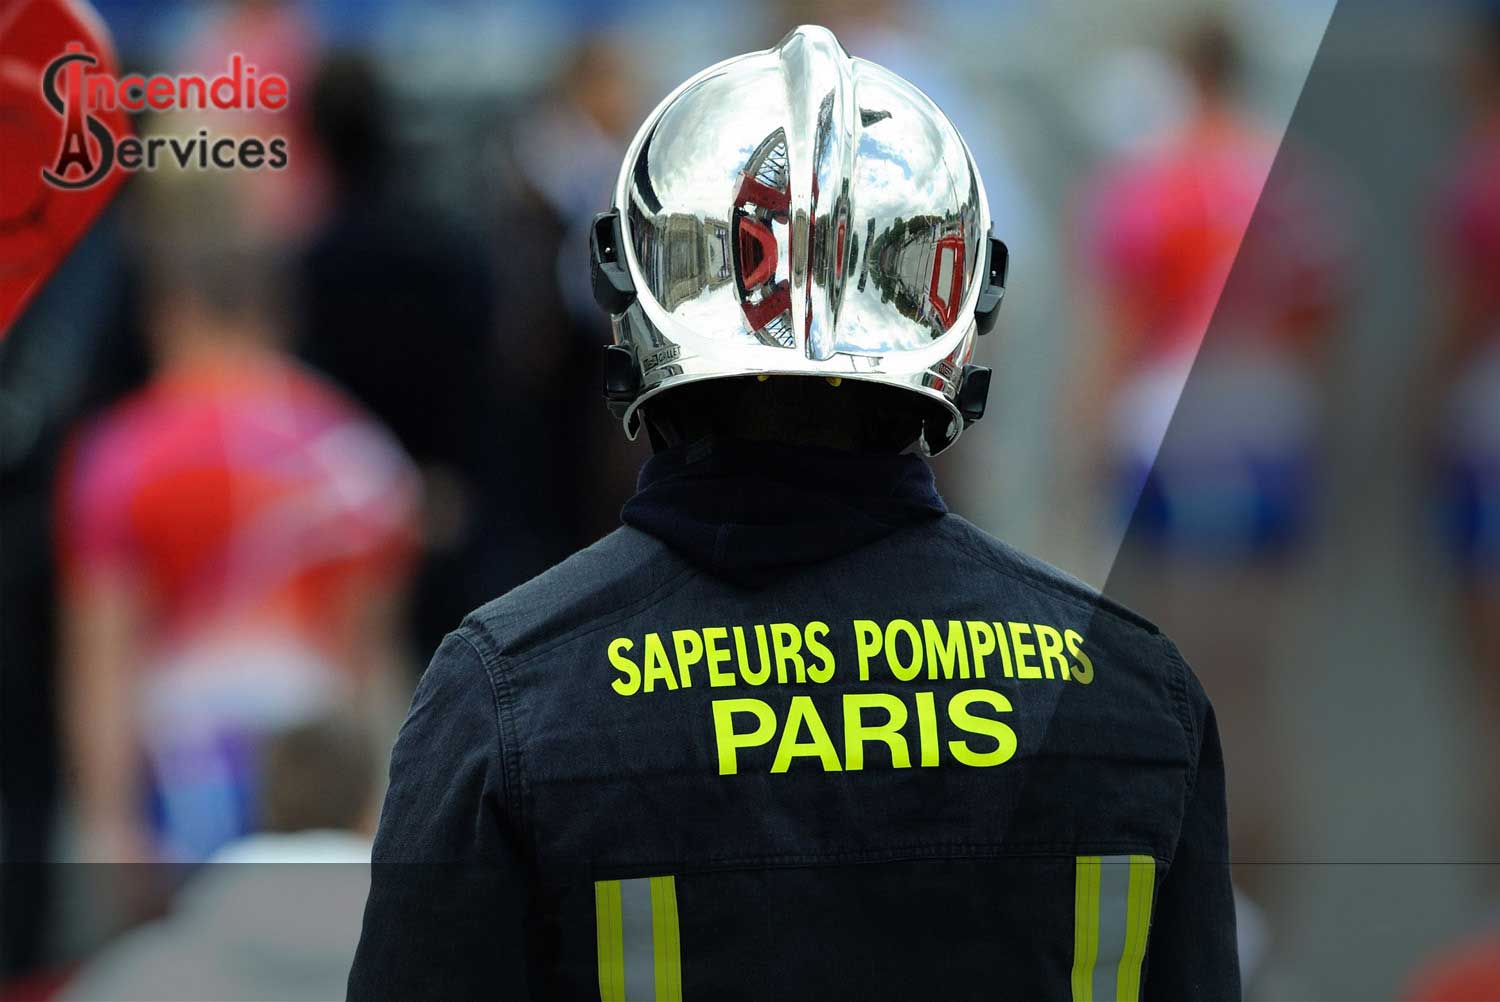 MAINTENANCE EXTINCTEUR PARIS 19 - Entreprise Certifiée | Incendie Services à Paris 75019